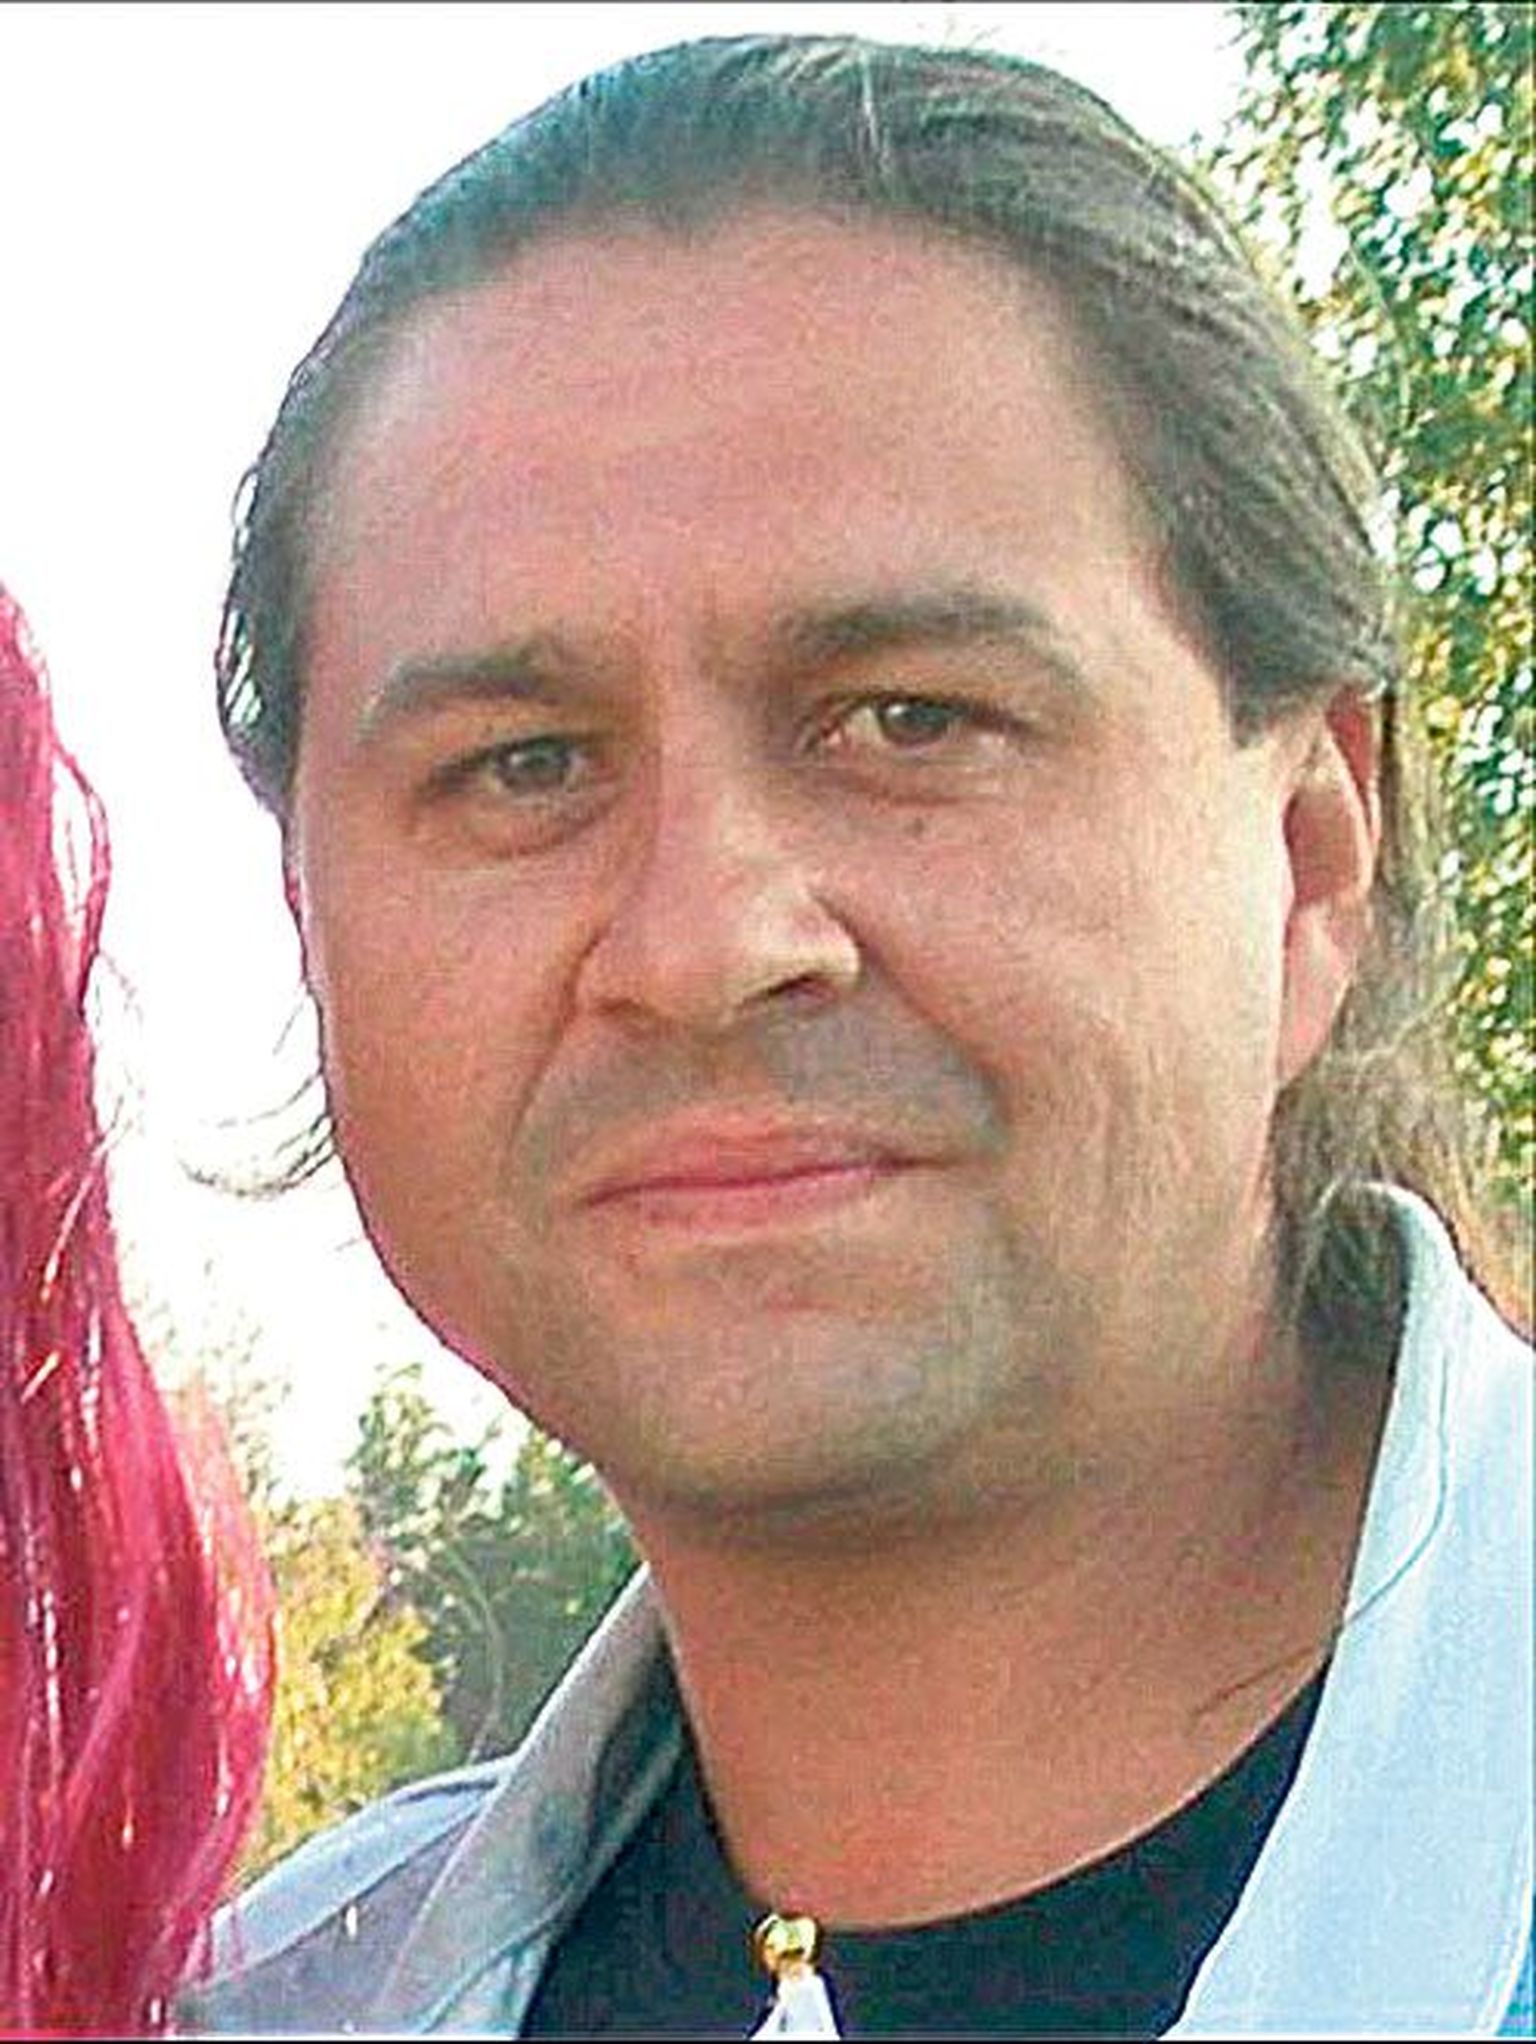 Артур Груздев признал себя виновным в организации массовых беспорядков в апреле 2007 года.